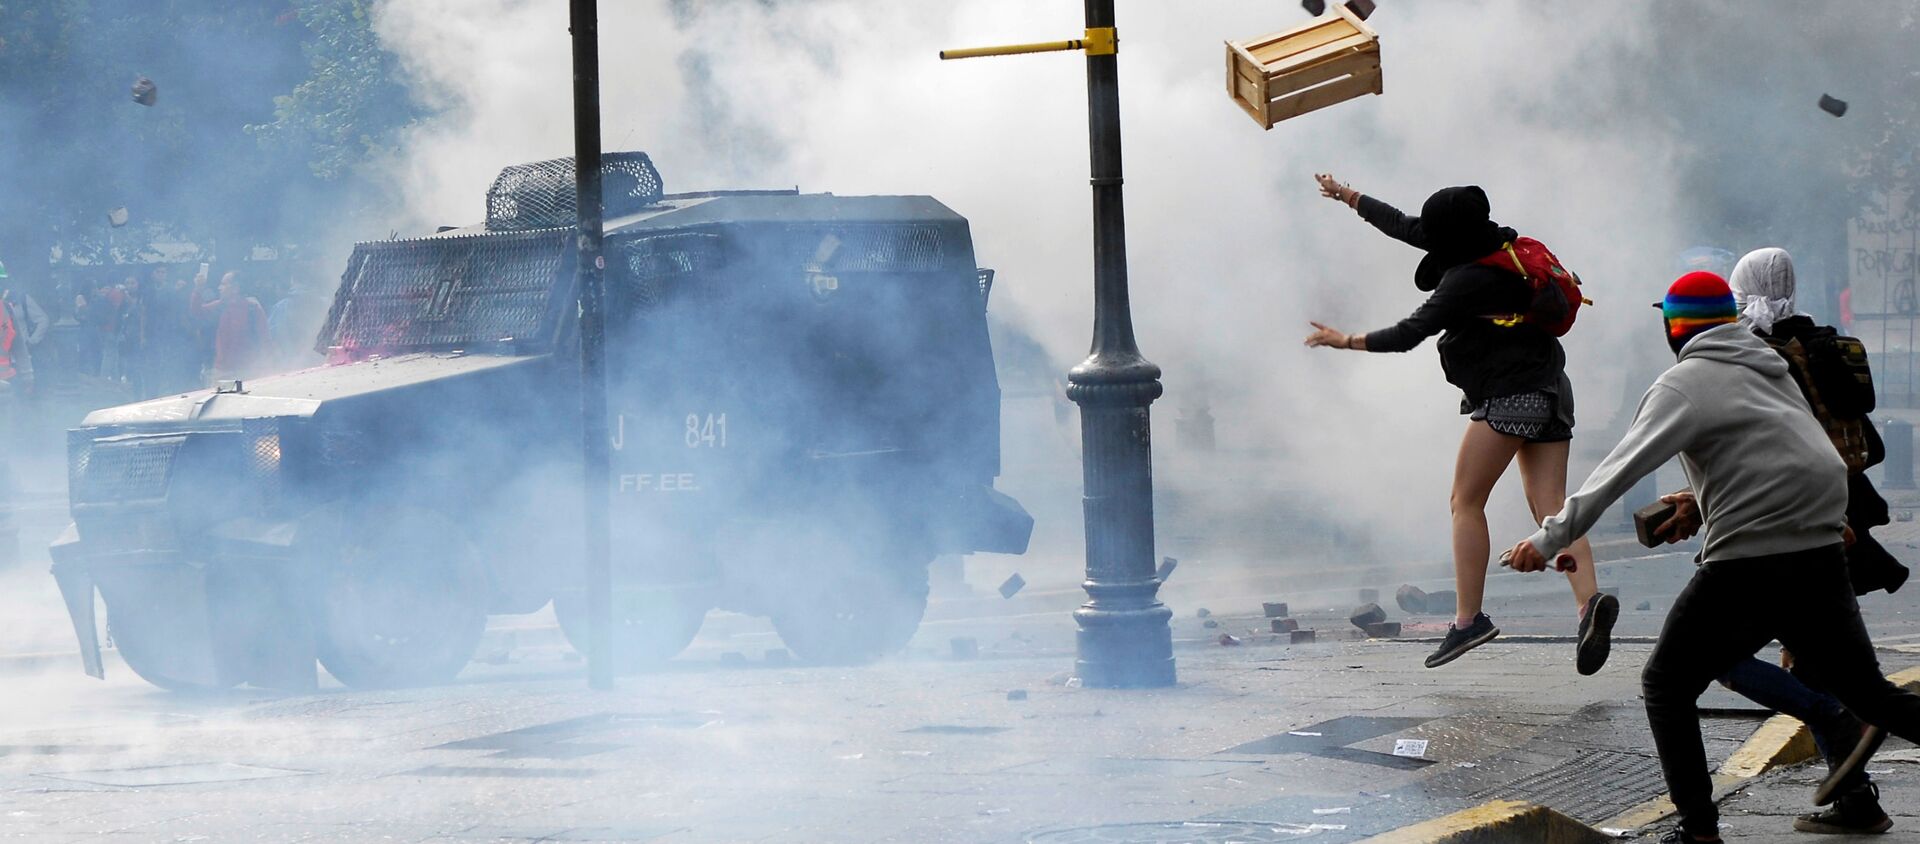 اشتباكات بين المتظاهرين والشرطة خلال احتجاجات ضد ارتفاع تكاليف المعيشة في كونسيبسيون، تشيلي 2 مارس 2020 - سبوتنيك عربي, 1920, 19.10.2020